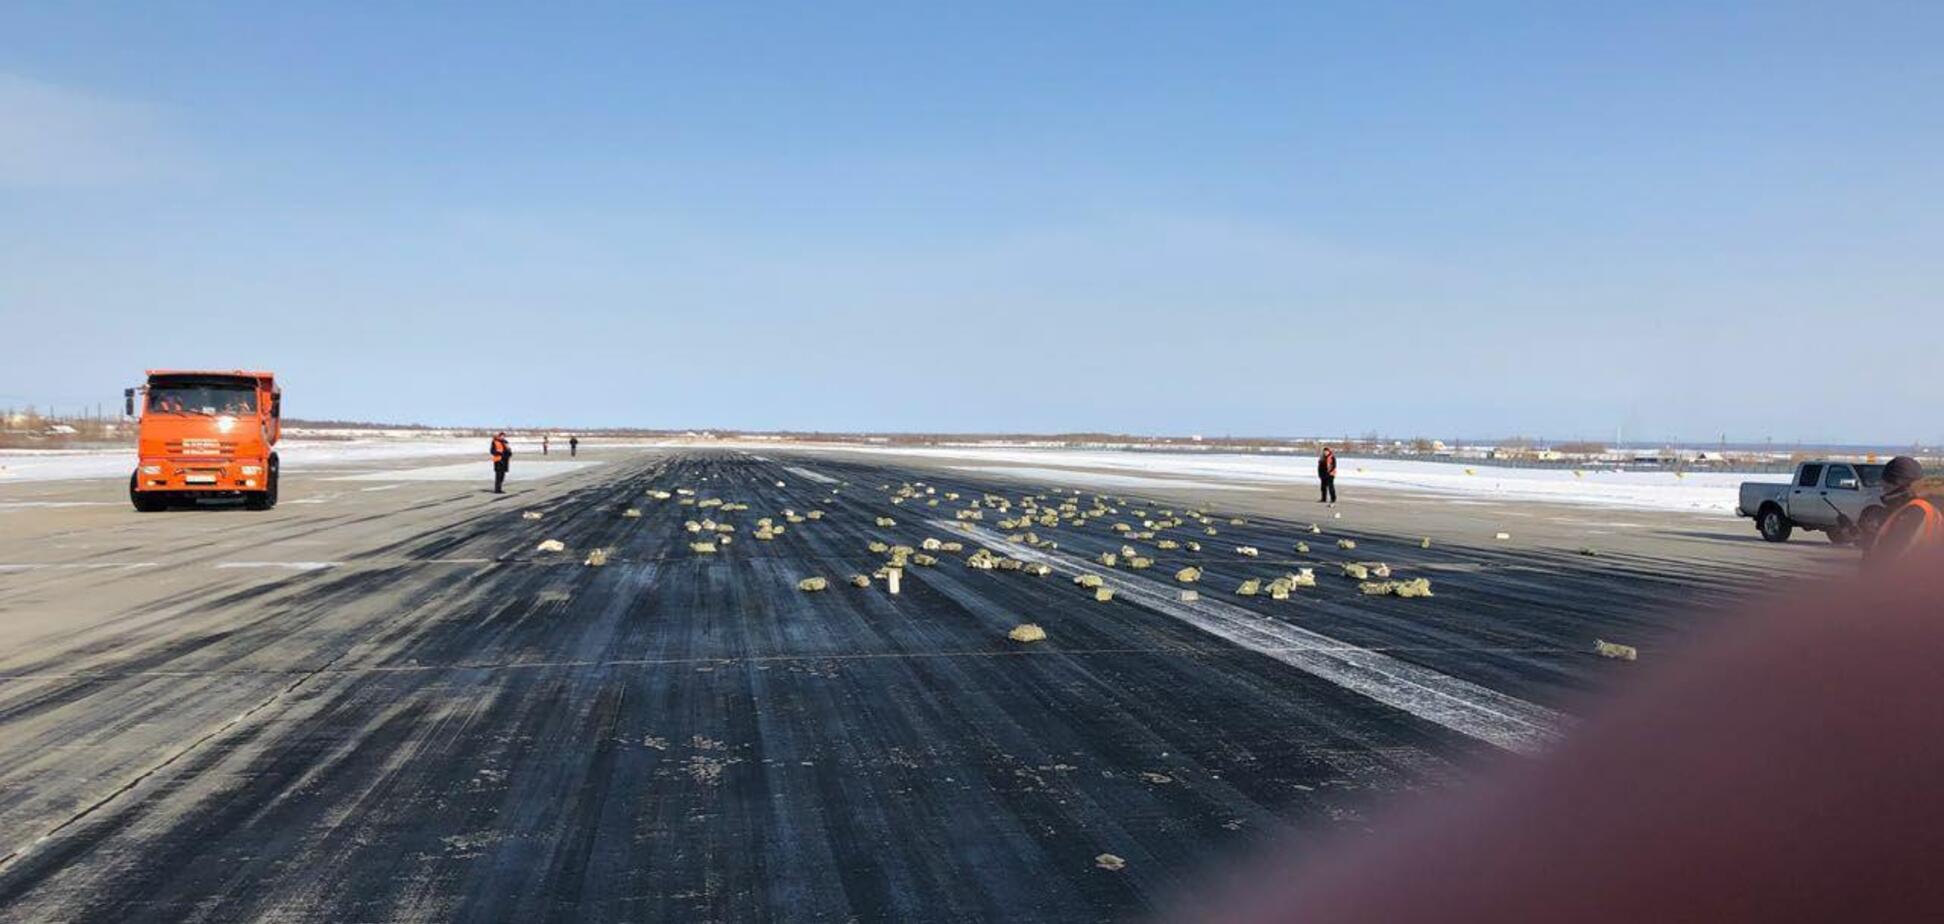 Раскидано по полю: в России из самолета вывалилось 9 тонн золота